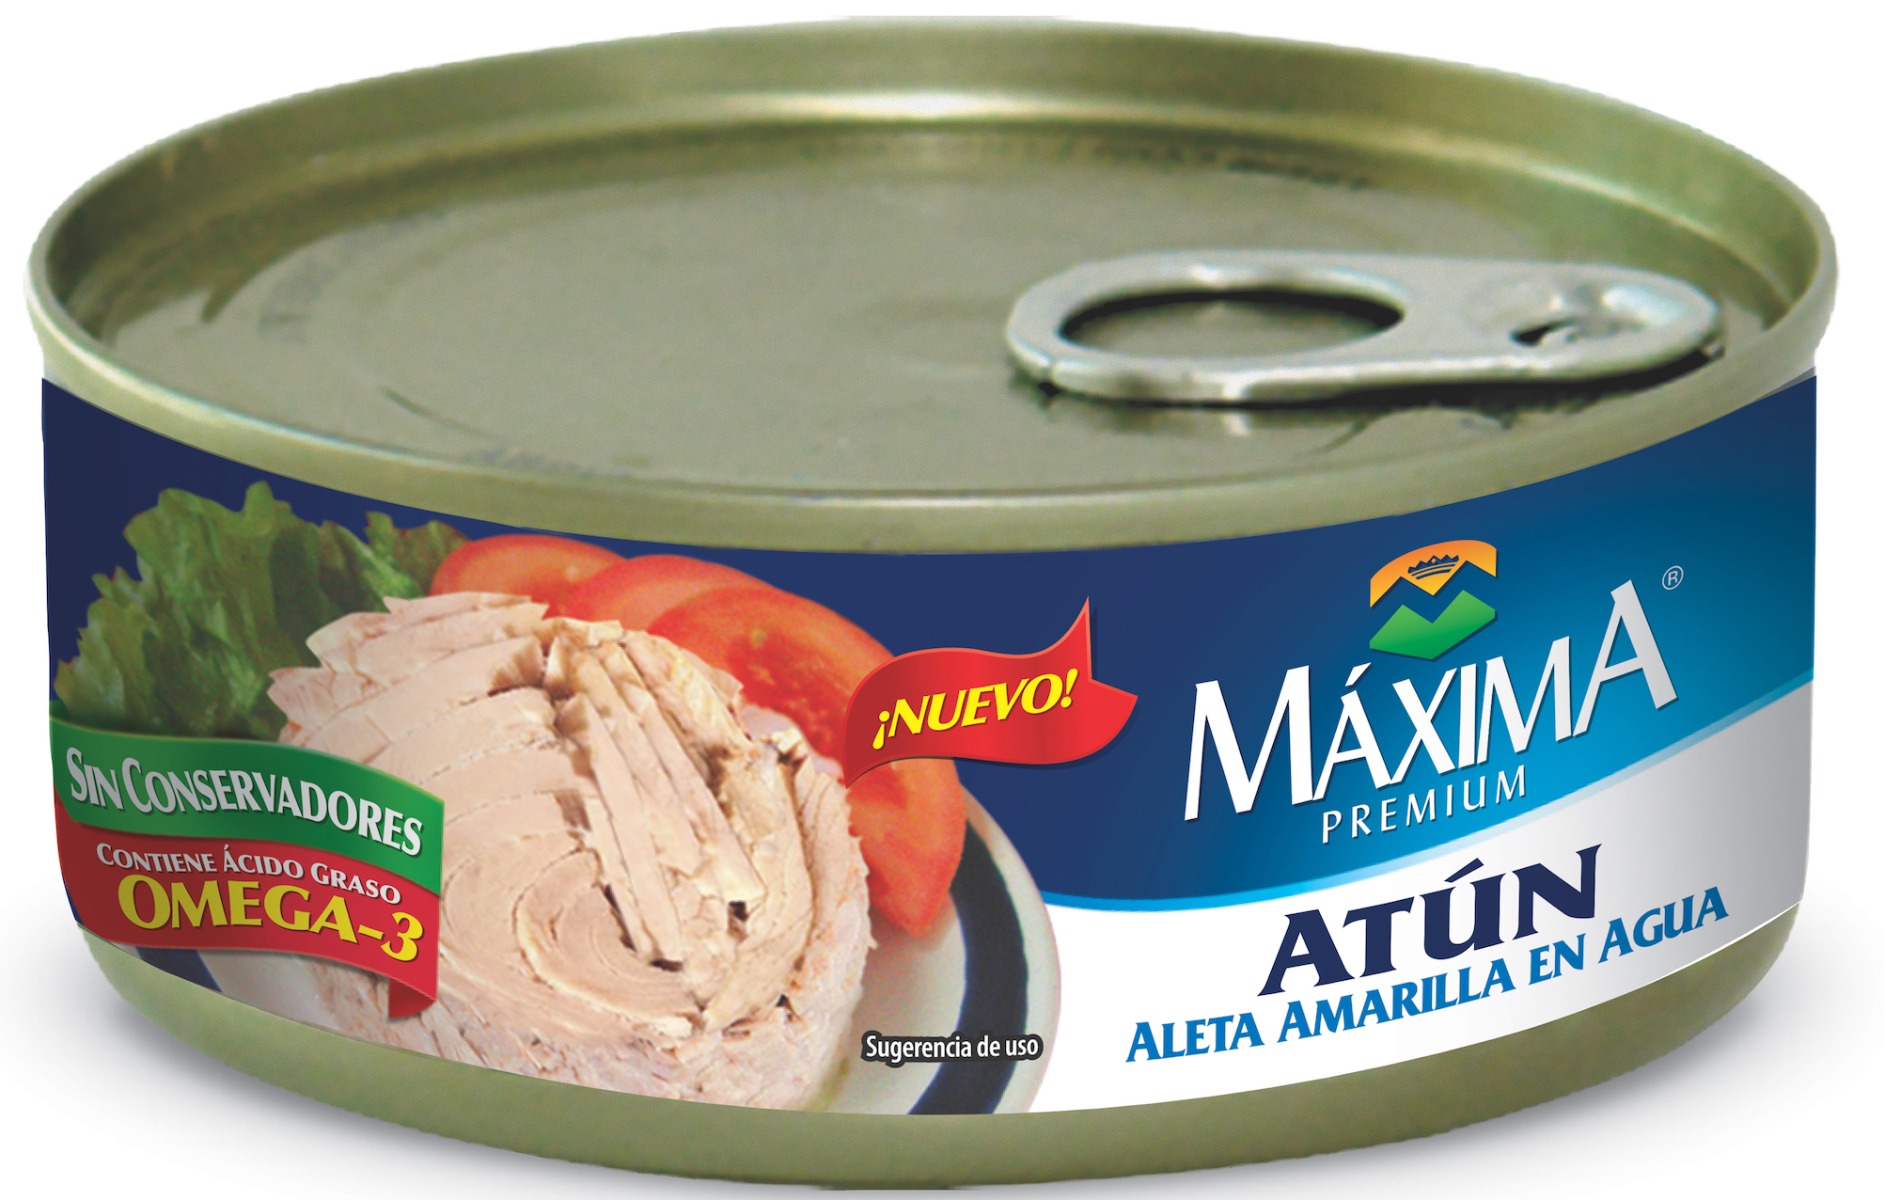 Maxima Premium Atun Agua 24/140 Gr